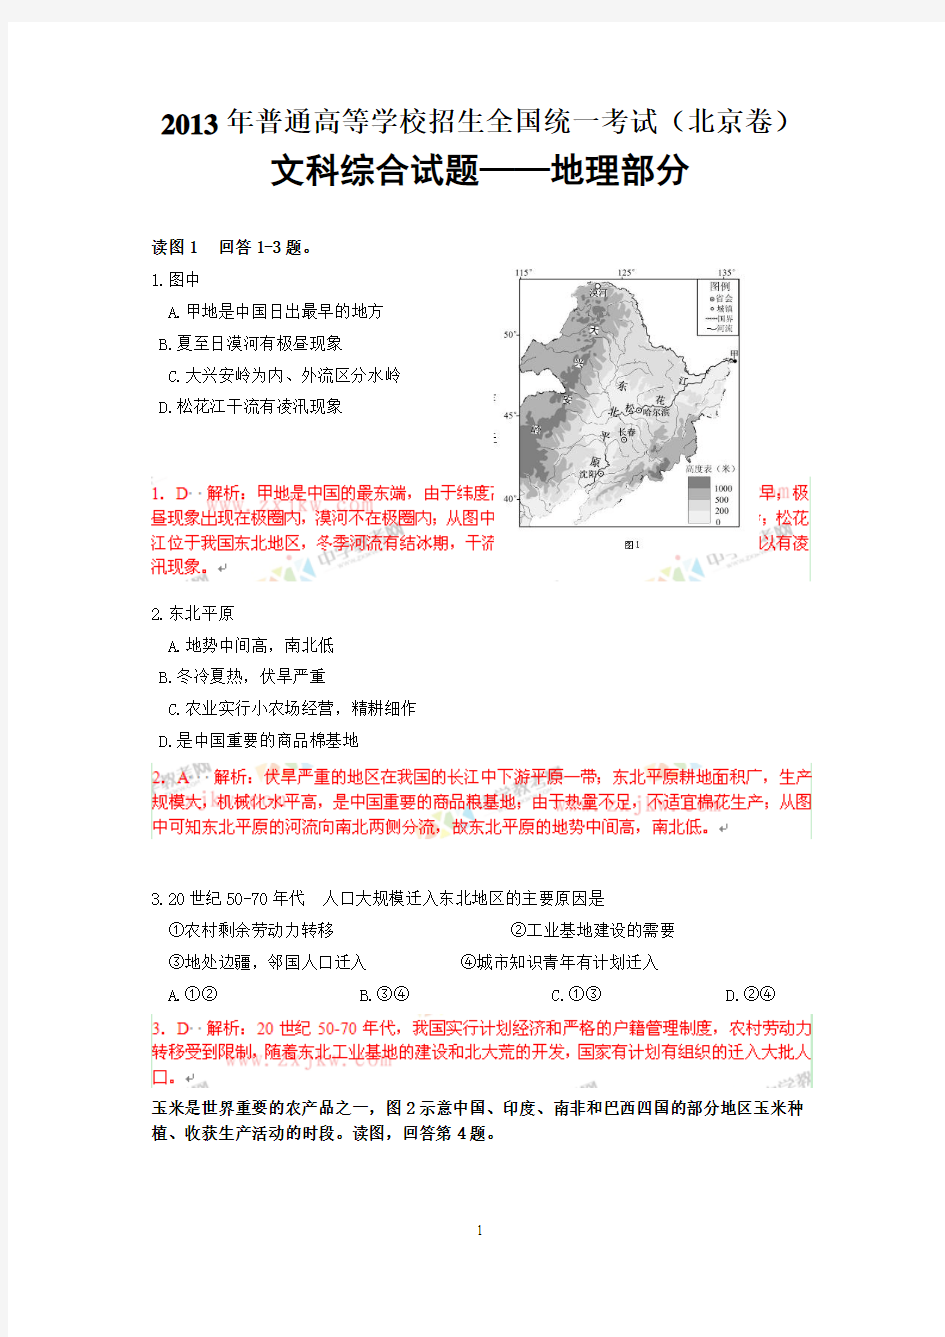 【地理】2013年高考真题——文综地理(北京卷)解析版